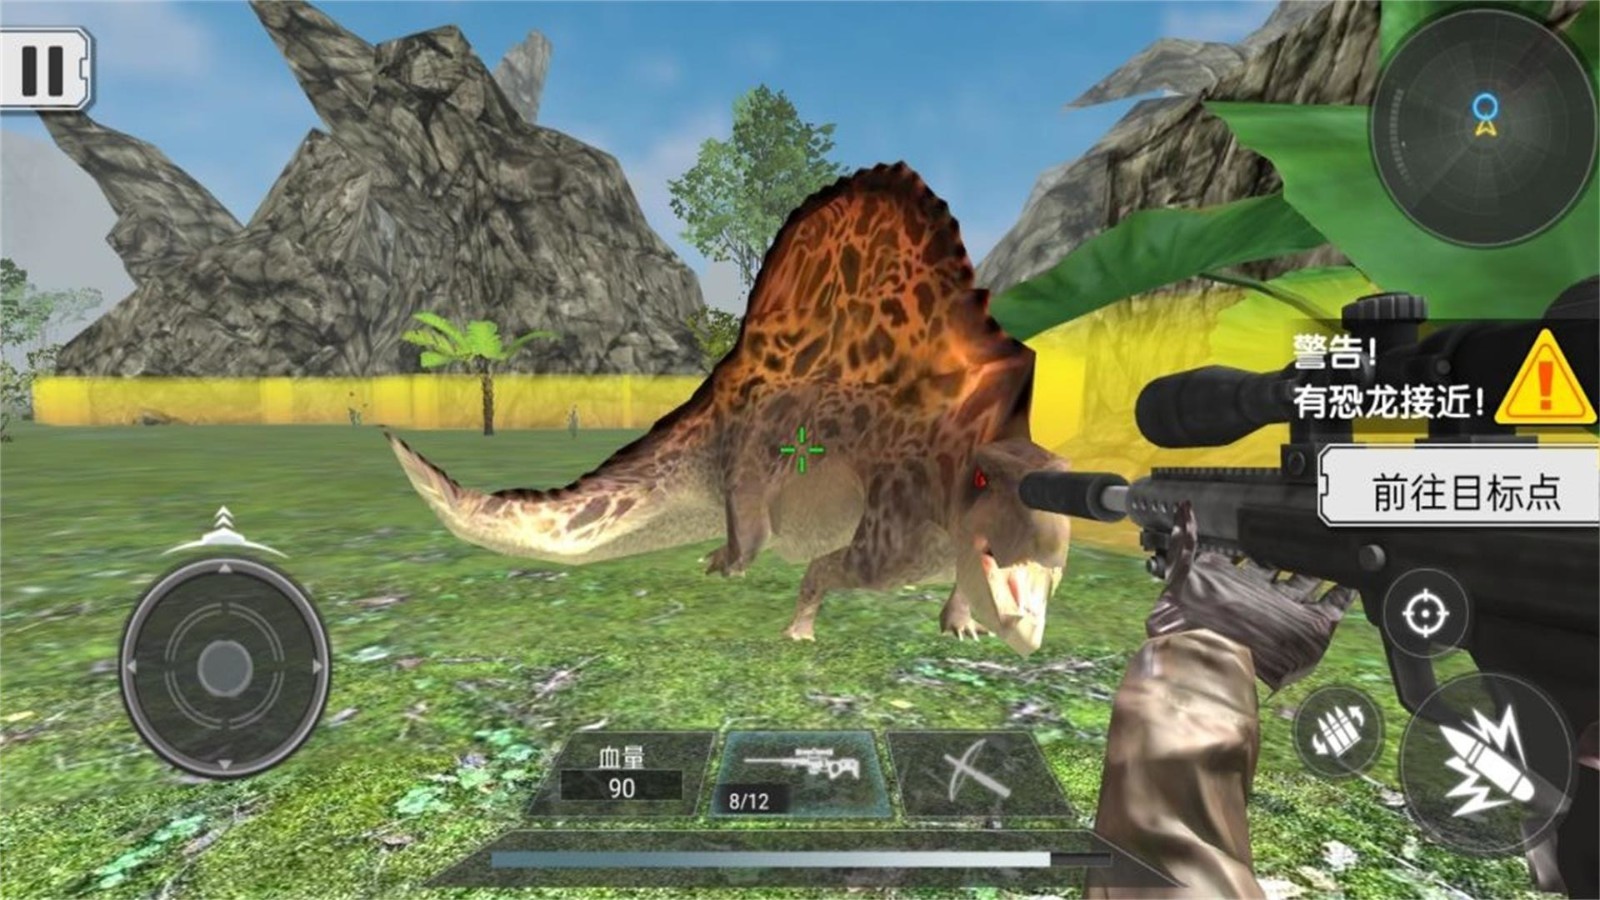 恐龙生存真实模拟游戏截图